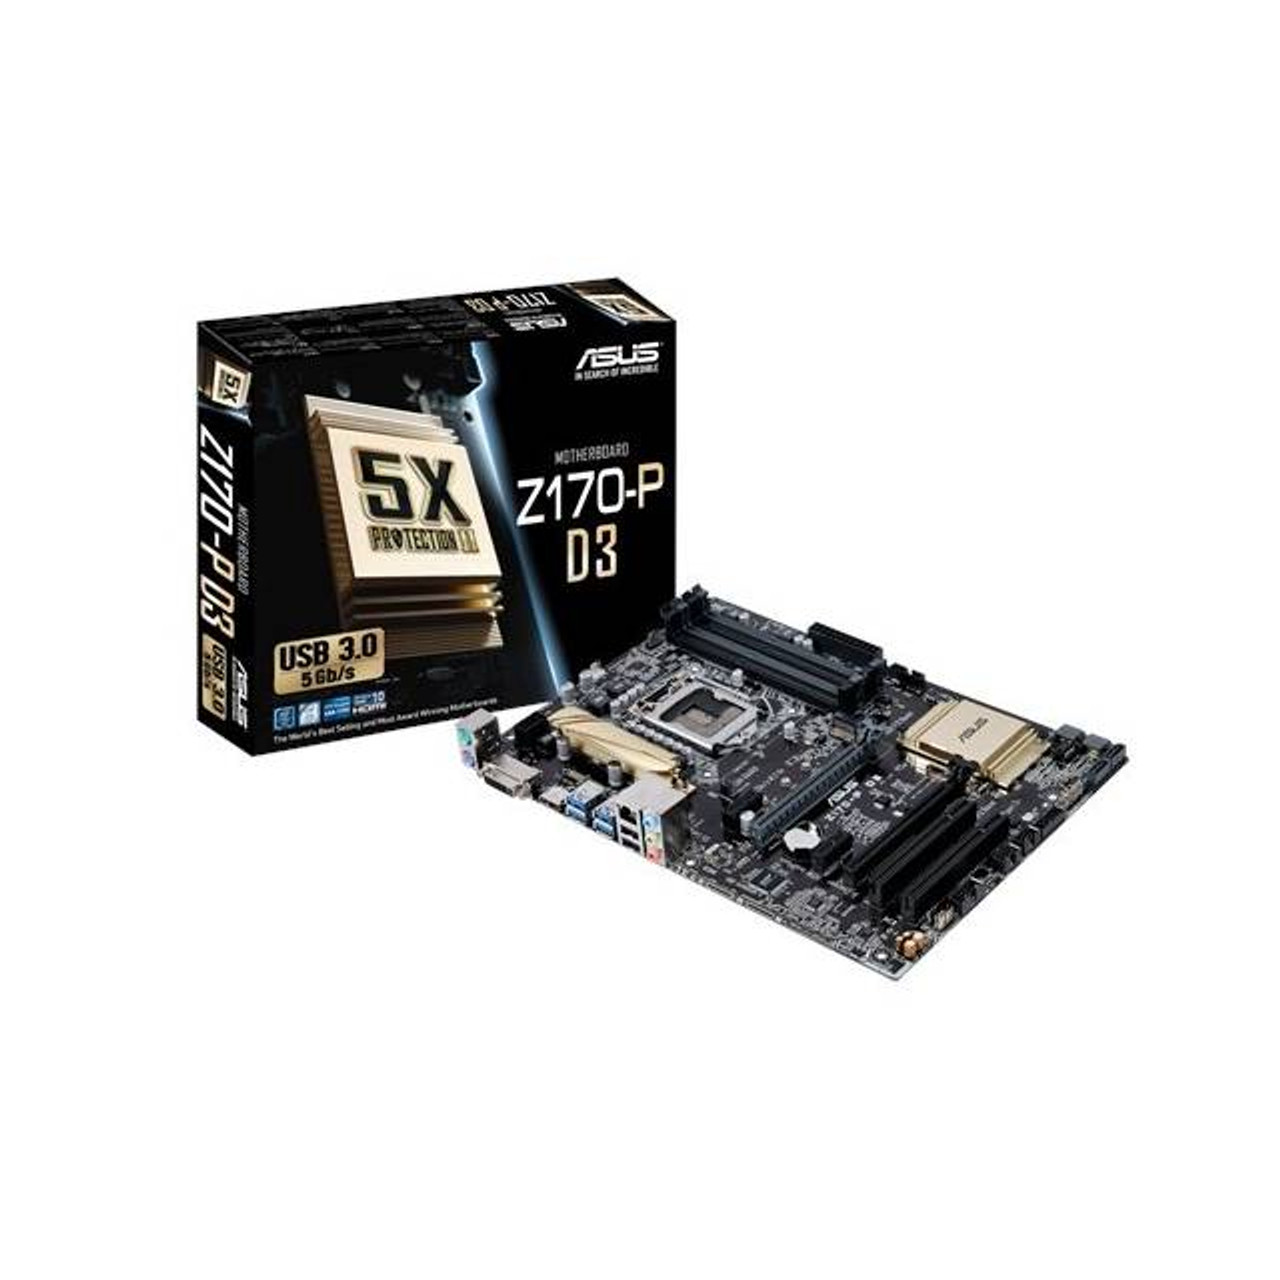 Asus Z170-P D3 LGA1151/ Intel Z170/ DDR3/ Quad CrossFireX/ SATA3&USB3.0/ M.2/ A&GbE/ ATX Motherboard